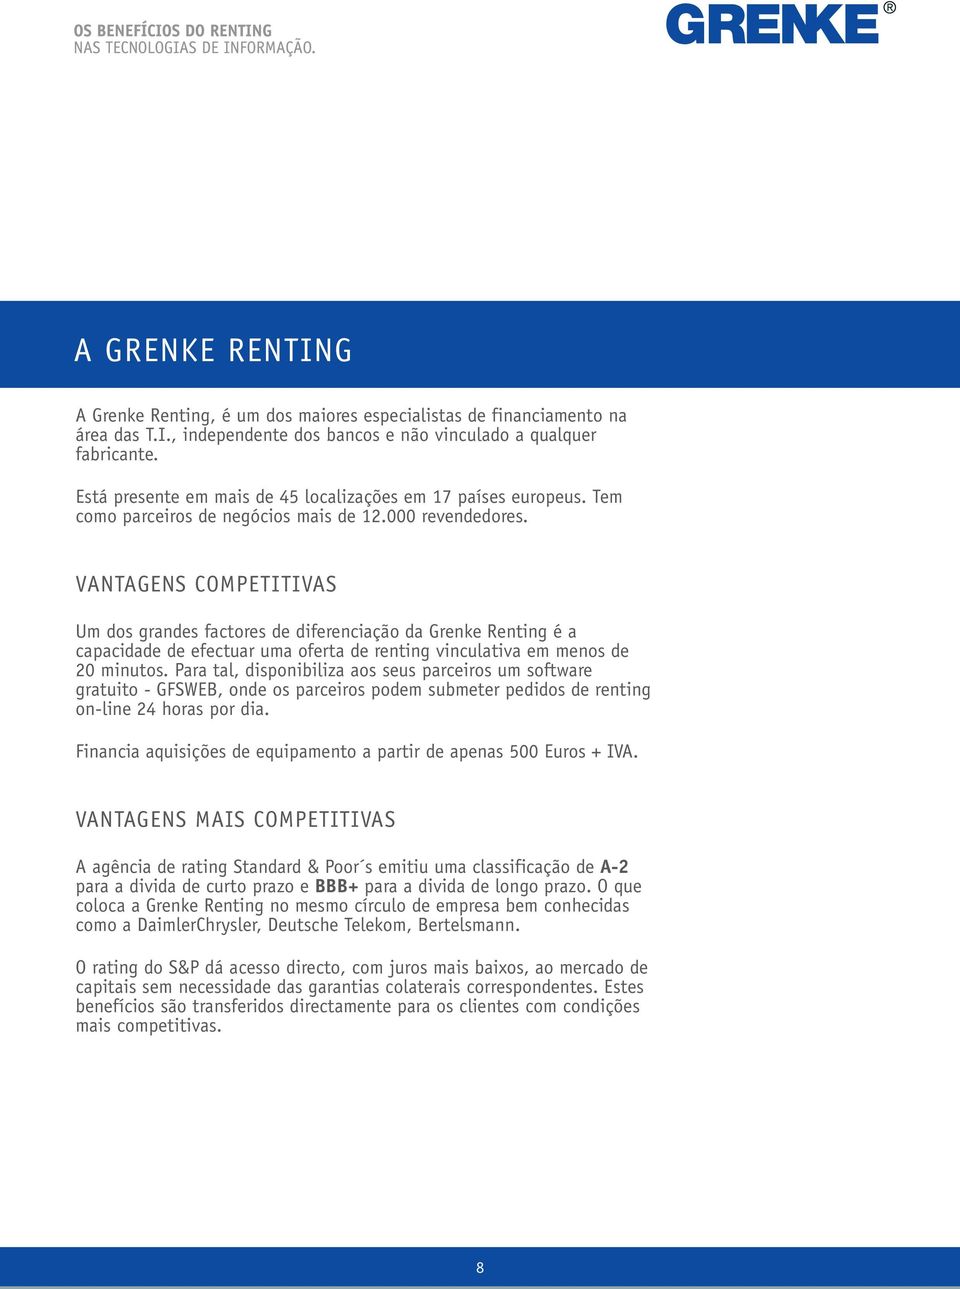 VANTAGENS COMPETITIVAS Um dos grandes factores de diferenciação da Grenke Renting é a capacidade de efectuar uma oferta de renting vinculativa em menos de 20 minutos.